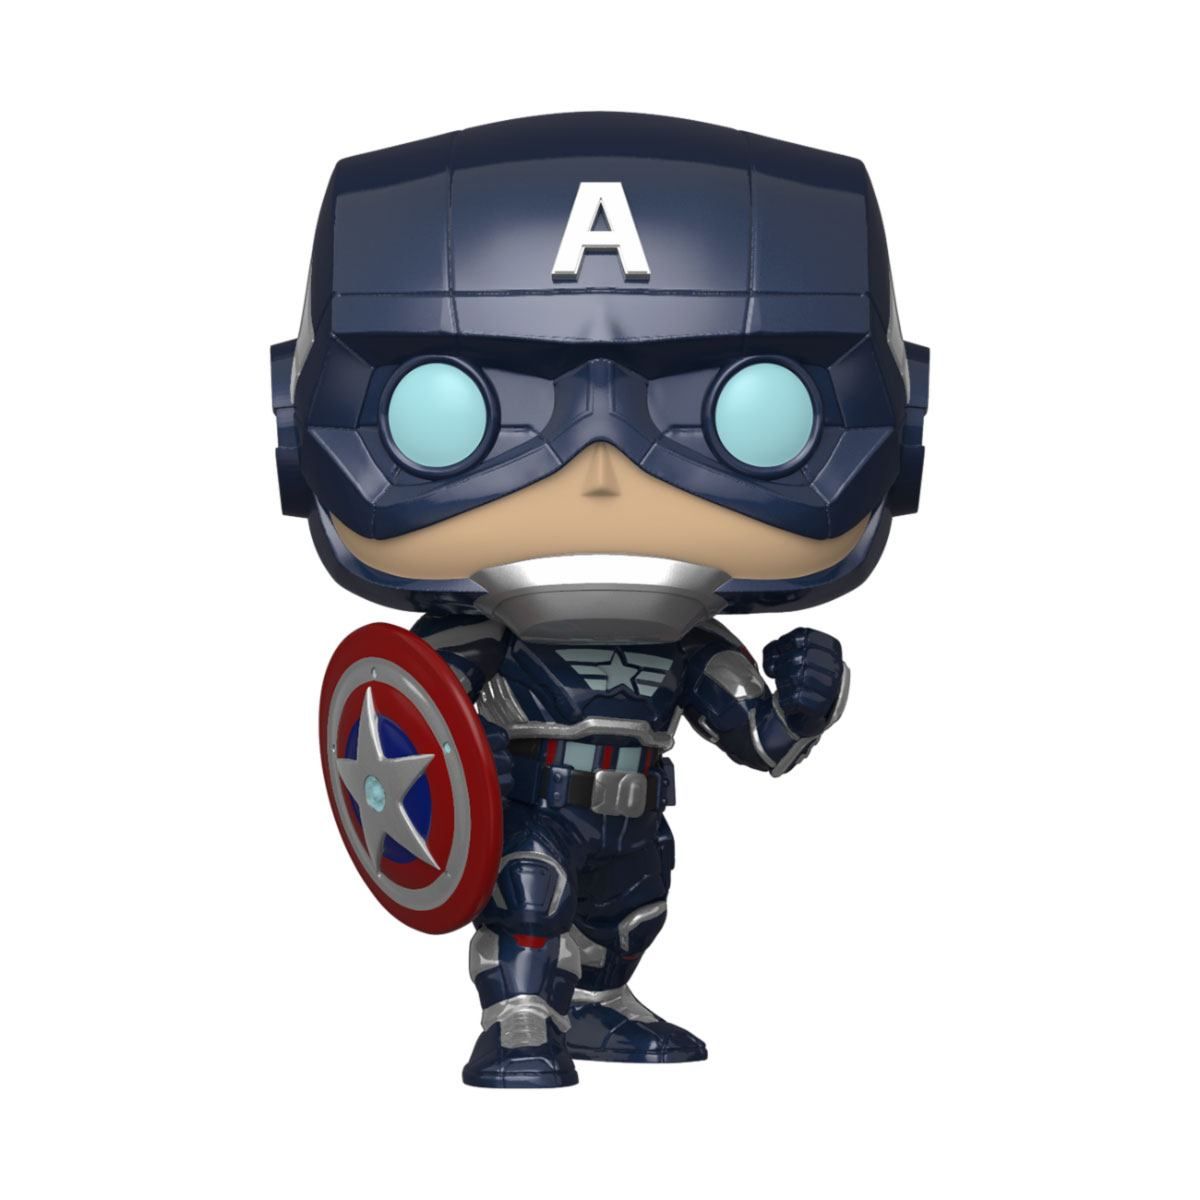 Marvel's Avengers (2020 video game) POP! Marvel Vinyl Figure Captain America 9 cm Funko